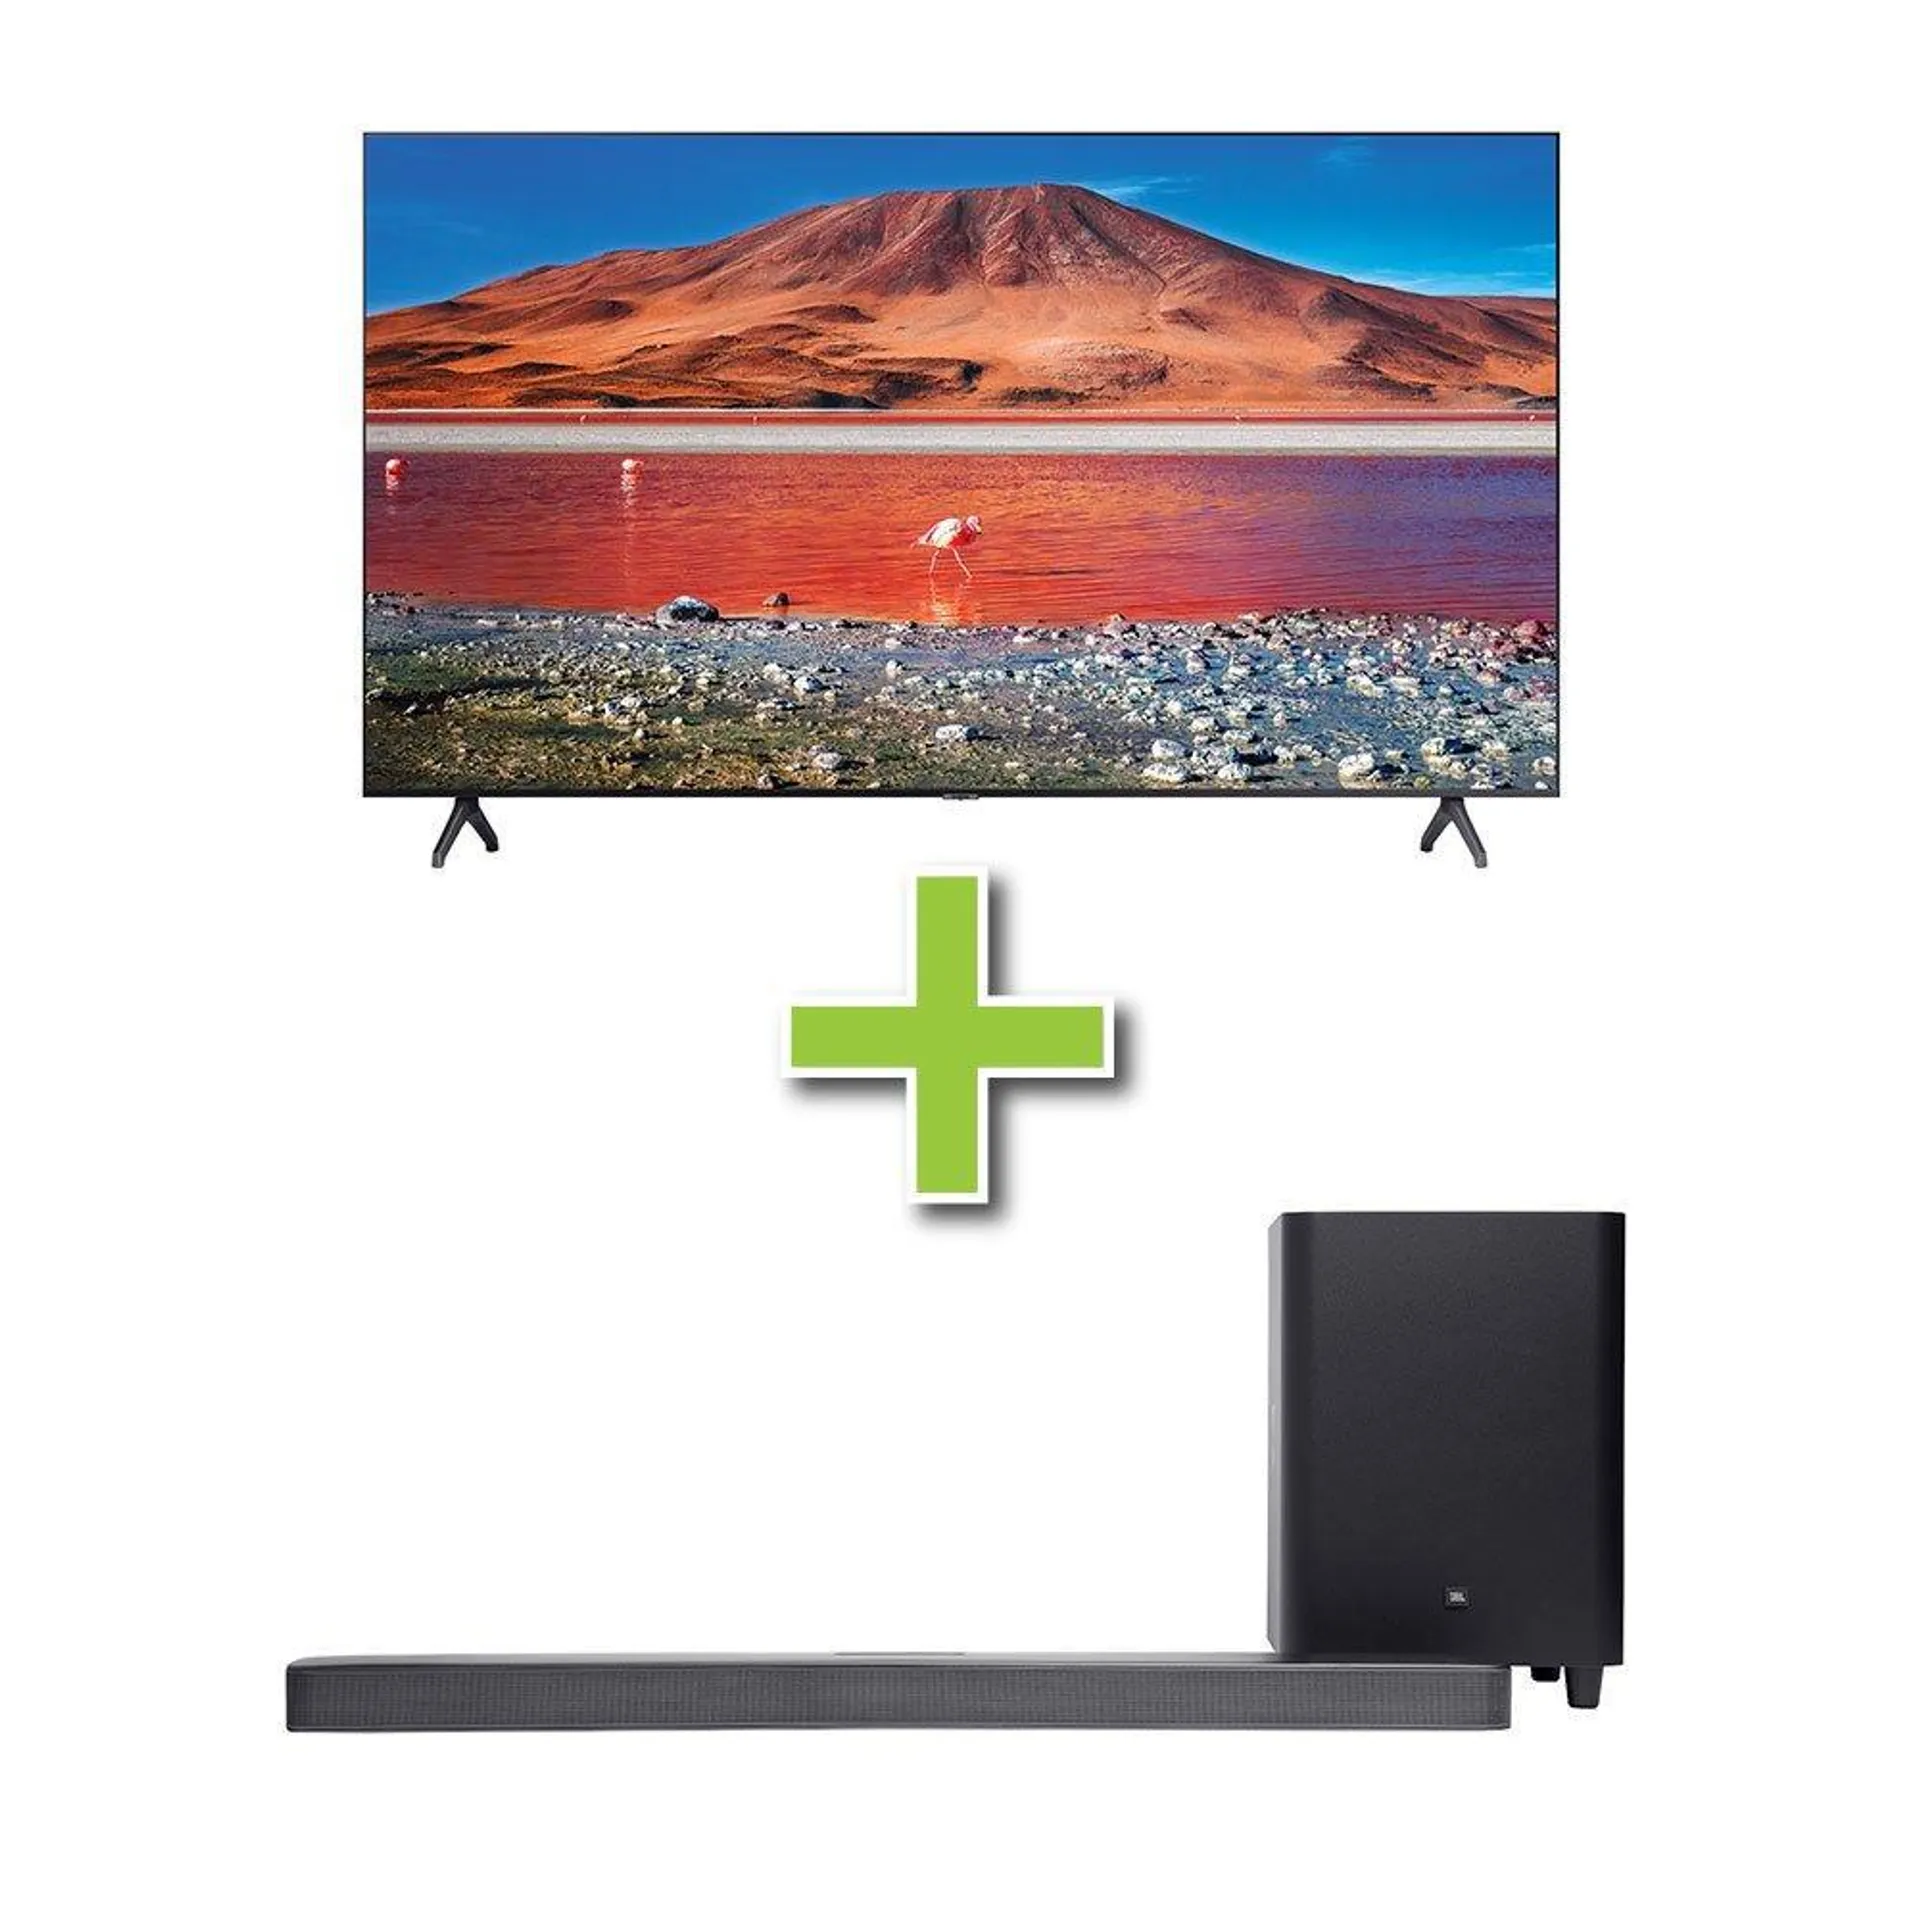 85" Samsung 4K Ultra HD Smart TV & JBL 5.1 ch Soundbar